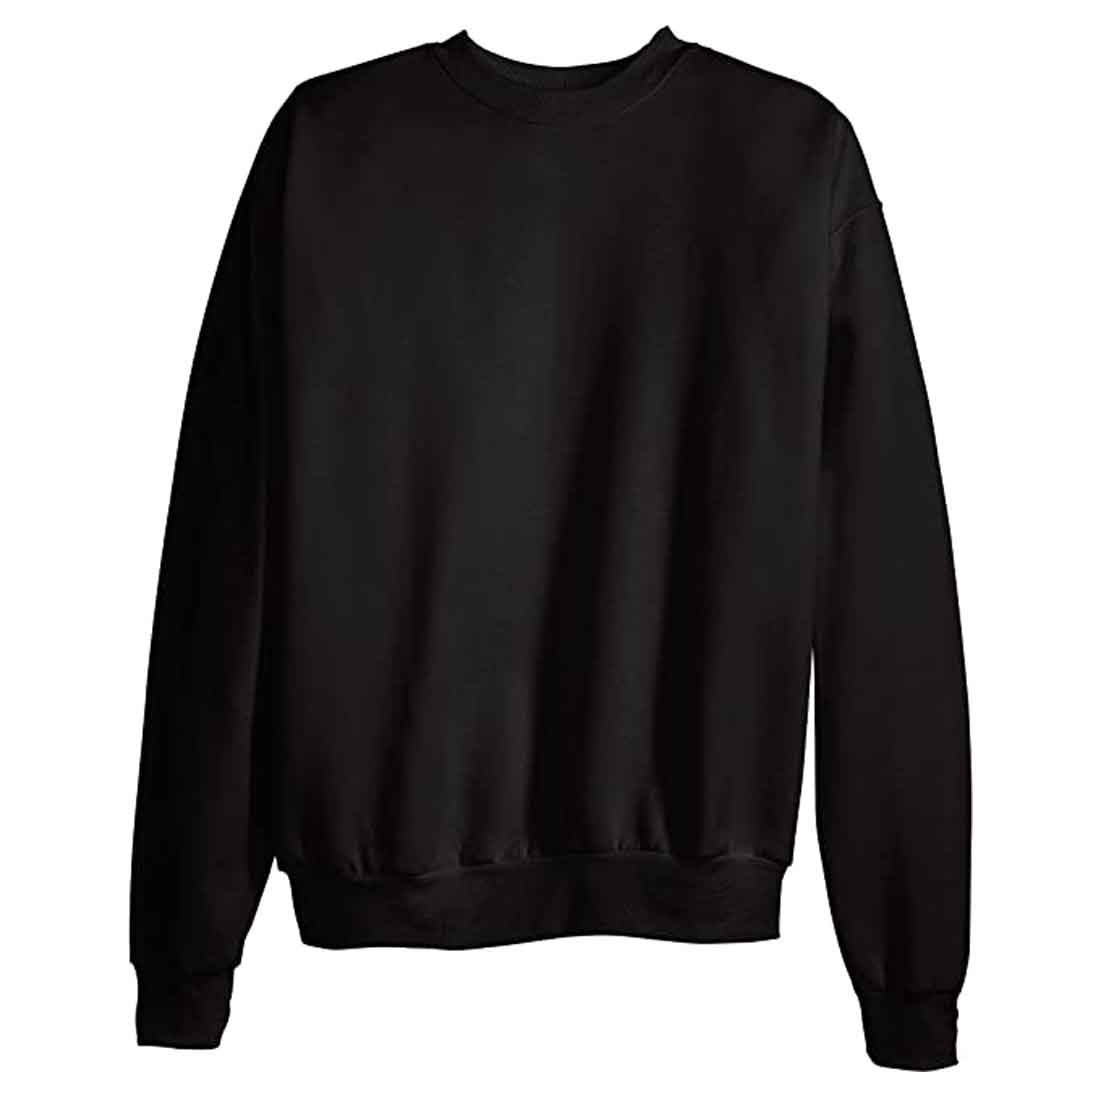 Back Print Sweatshirt for Men Full Sleeves Relaxed Fit - Killer